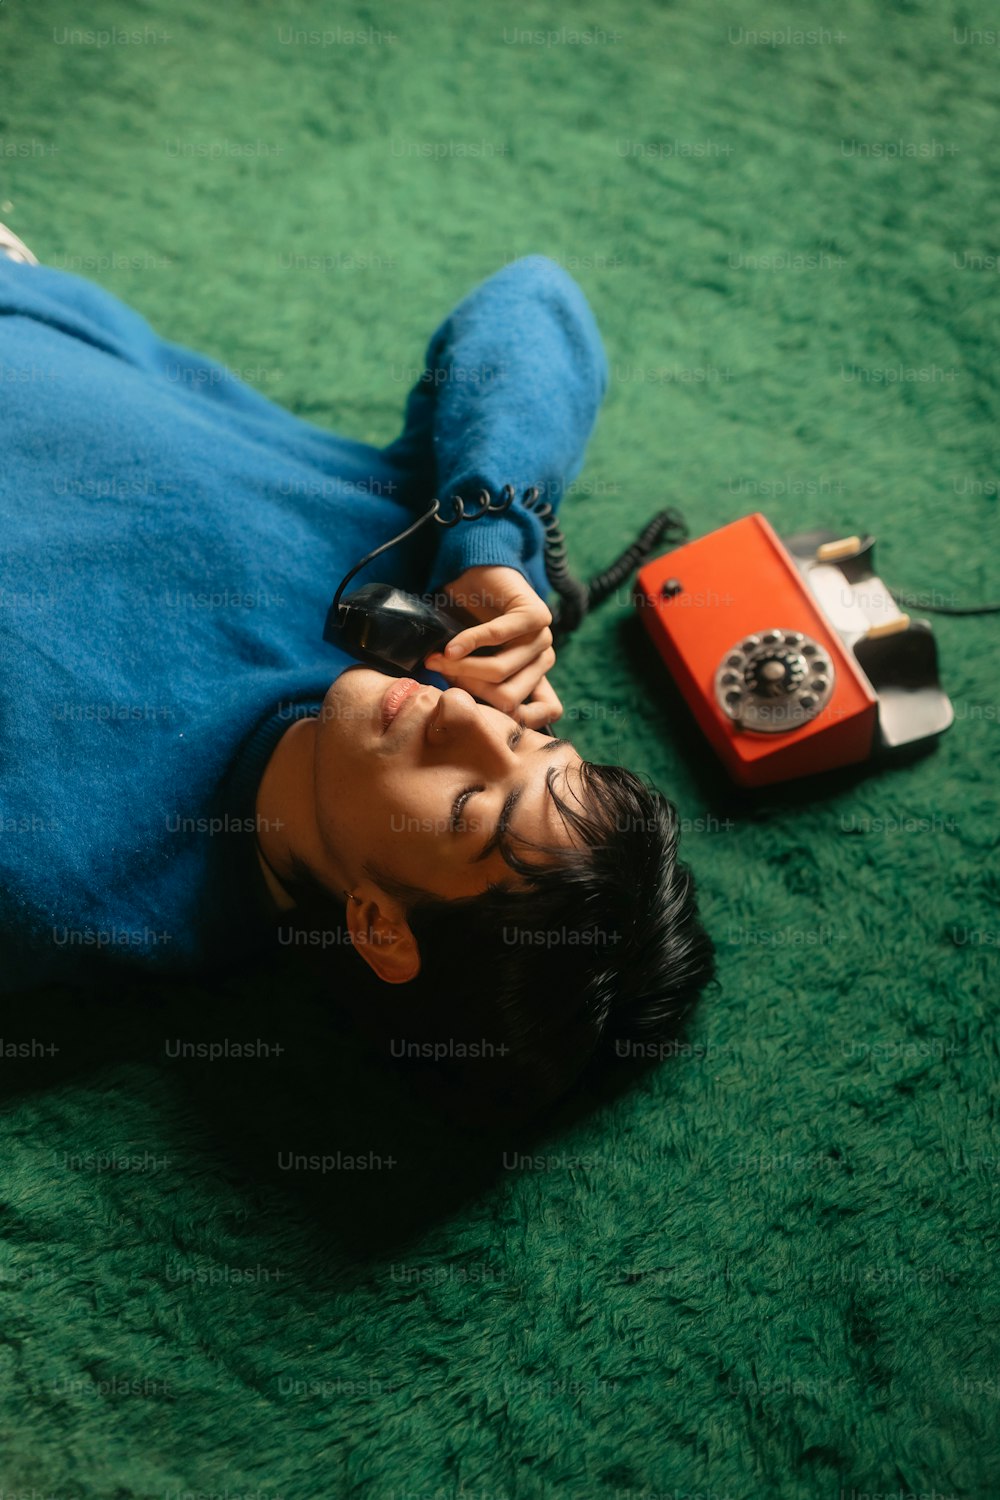 une personne allongée sur le sol avec un téléphone cellulaire